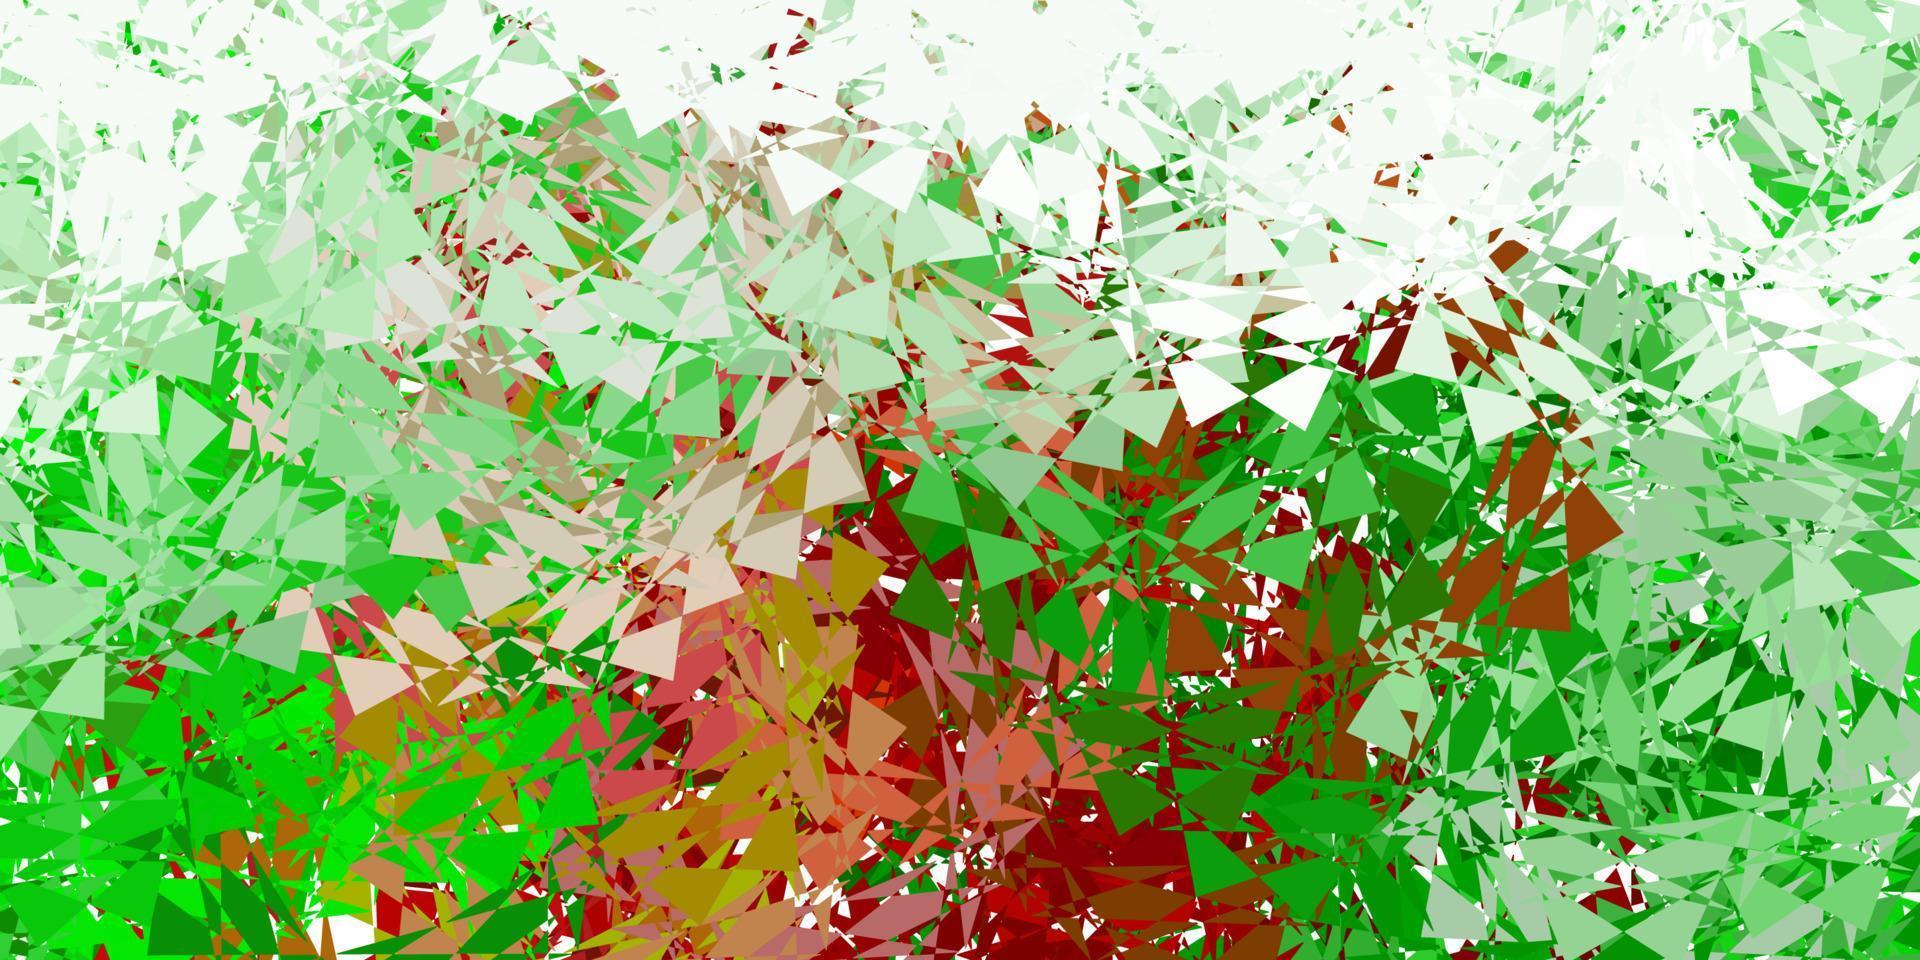 ljusgrönt, rött vektormönster med månghörniga former. vektor